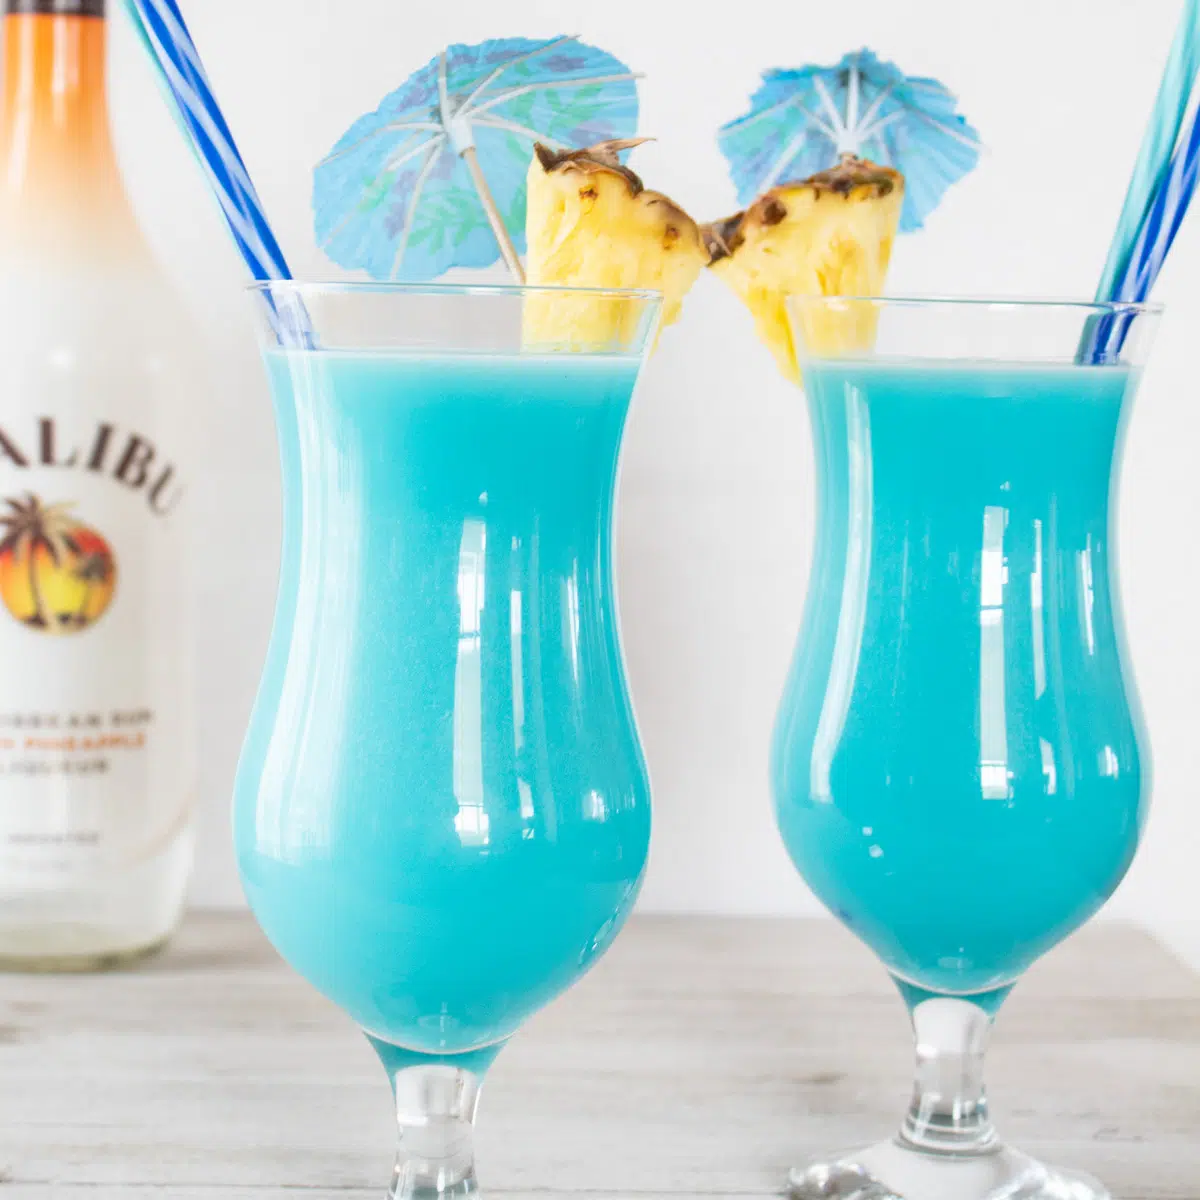 Gefrorener blauer hawaiianischer Cocktail serviert in Hurrican-Gläsern mit Ananasgarnitur.